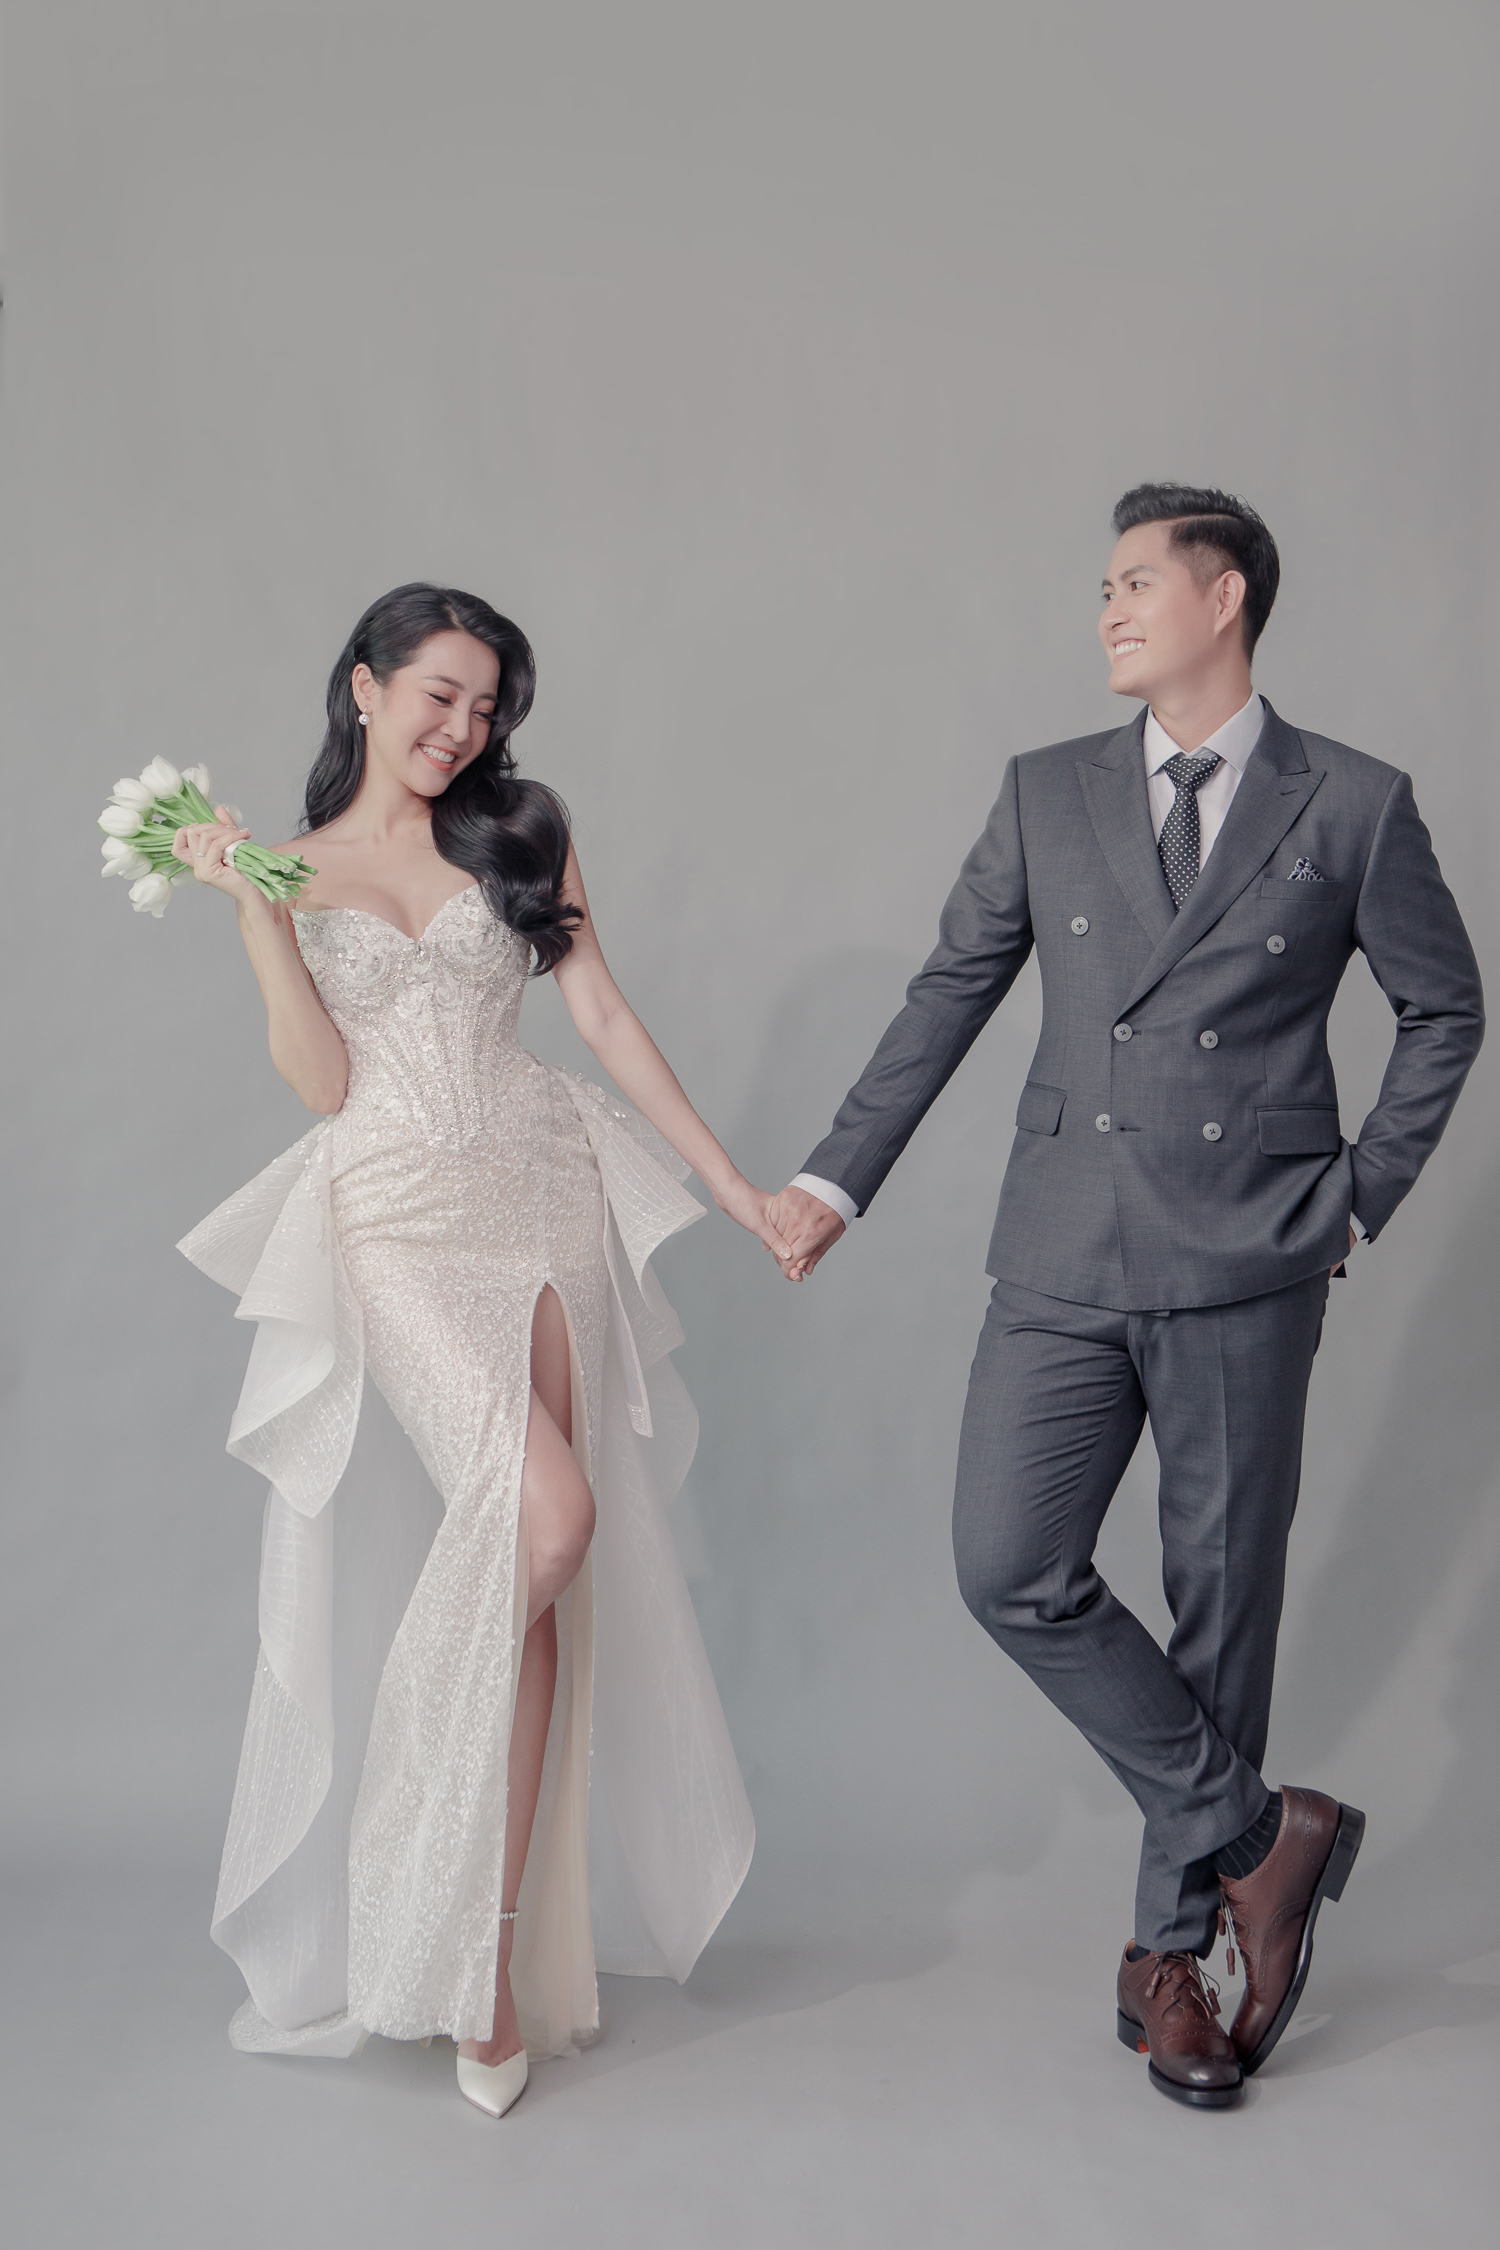 Hé lộ bộ ảnh cưới của Karen Nguyễn cùng ông xã: Áo cưới được đính kết hơn 1000 viên pha lê - ảnh 10